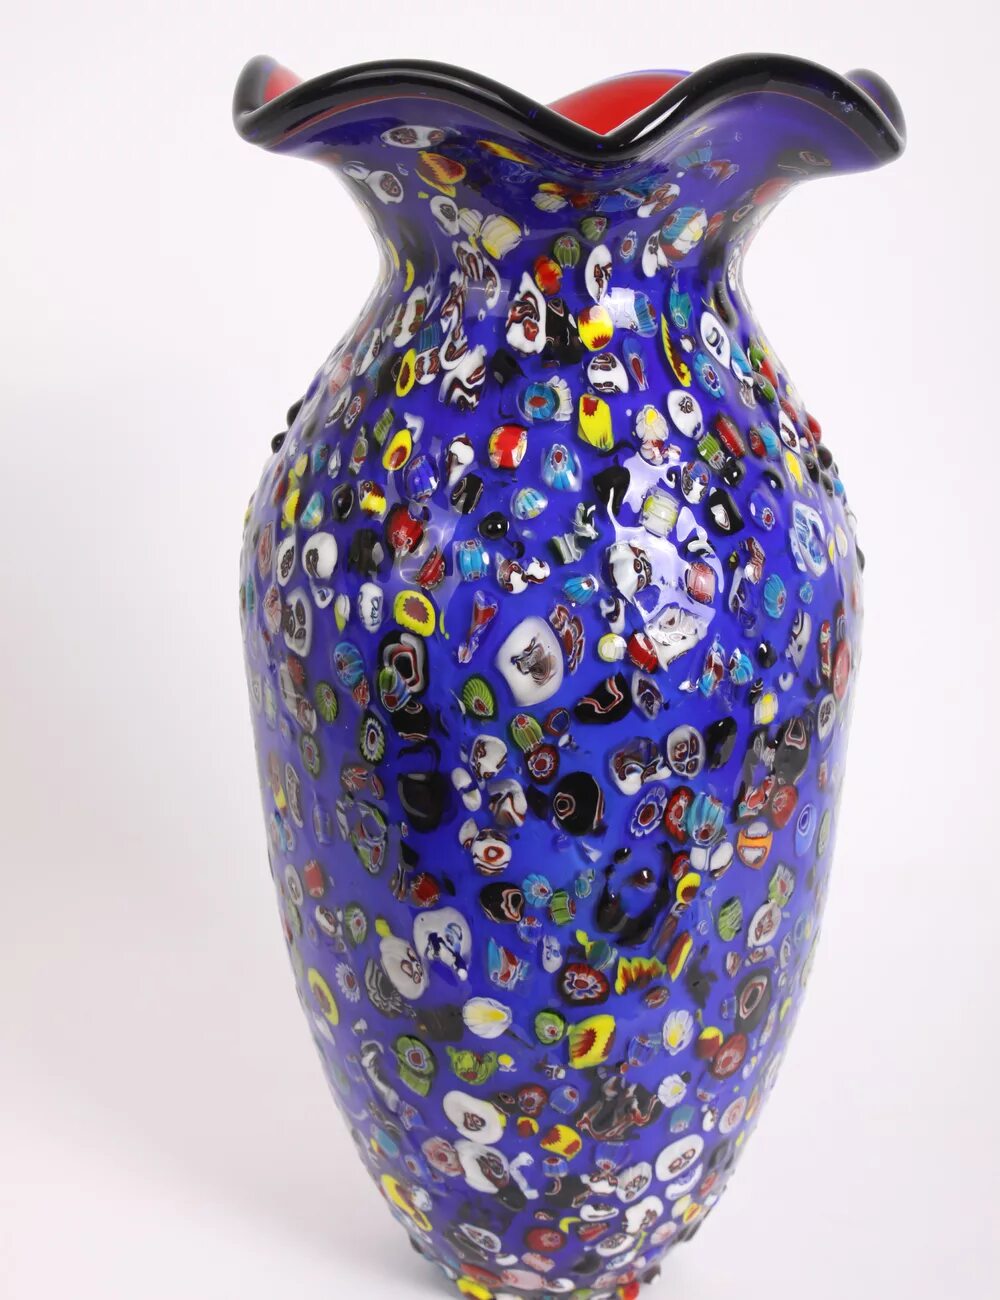 Цветной ваза. Ваза Мурано. Мурано стекло Италия ваза. Вазы из цветного стекла. Муранское стекло вазы.